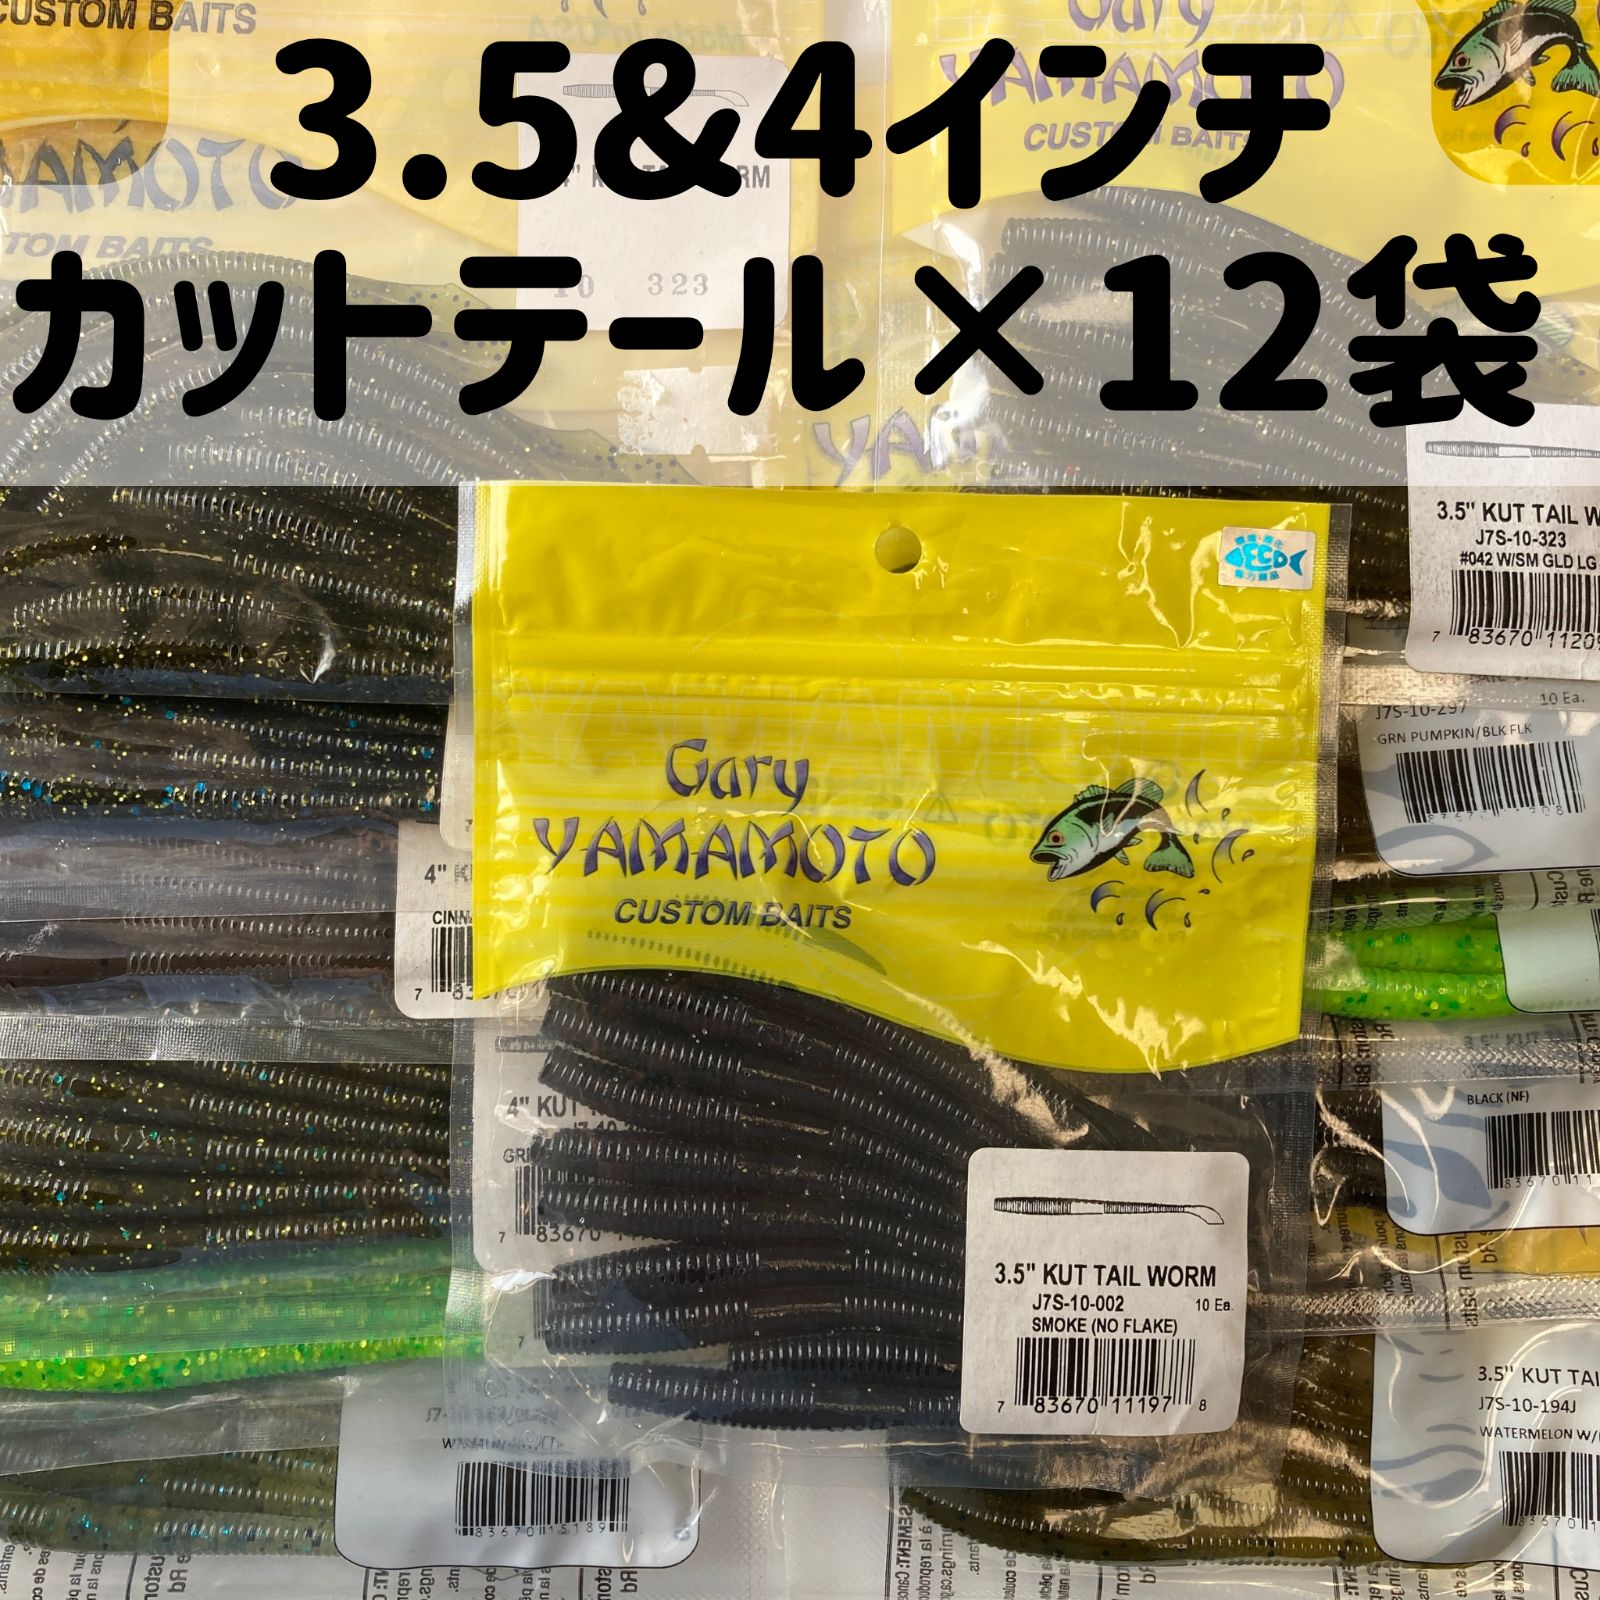 ゲーリーヤマモト 3.5 & 4インチ カットテールワーム 12袋セット(管理番号248)